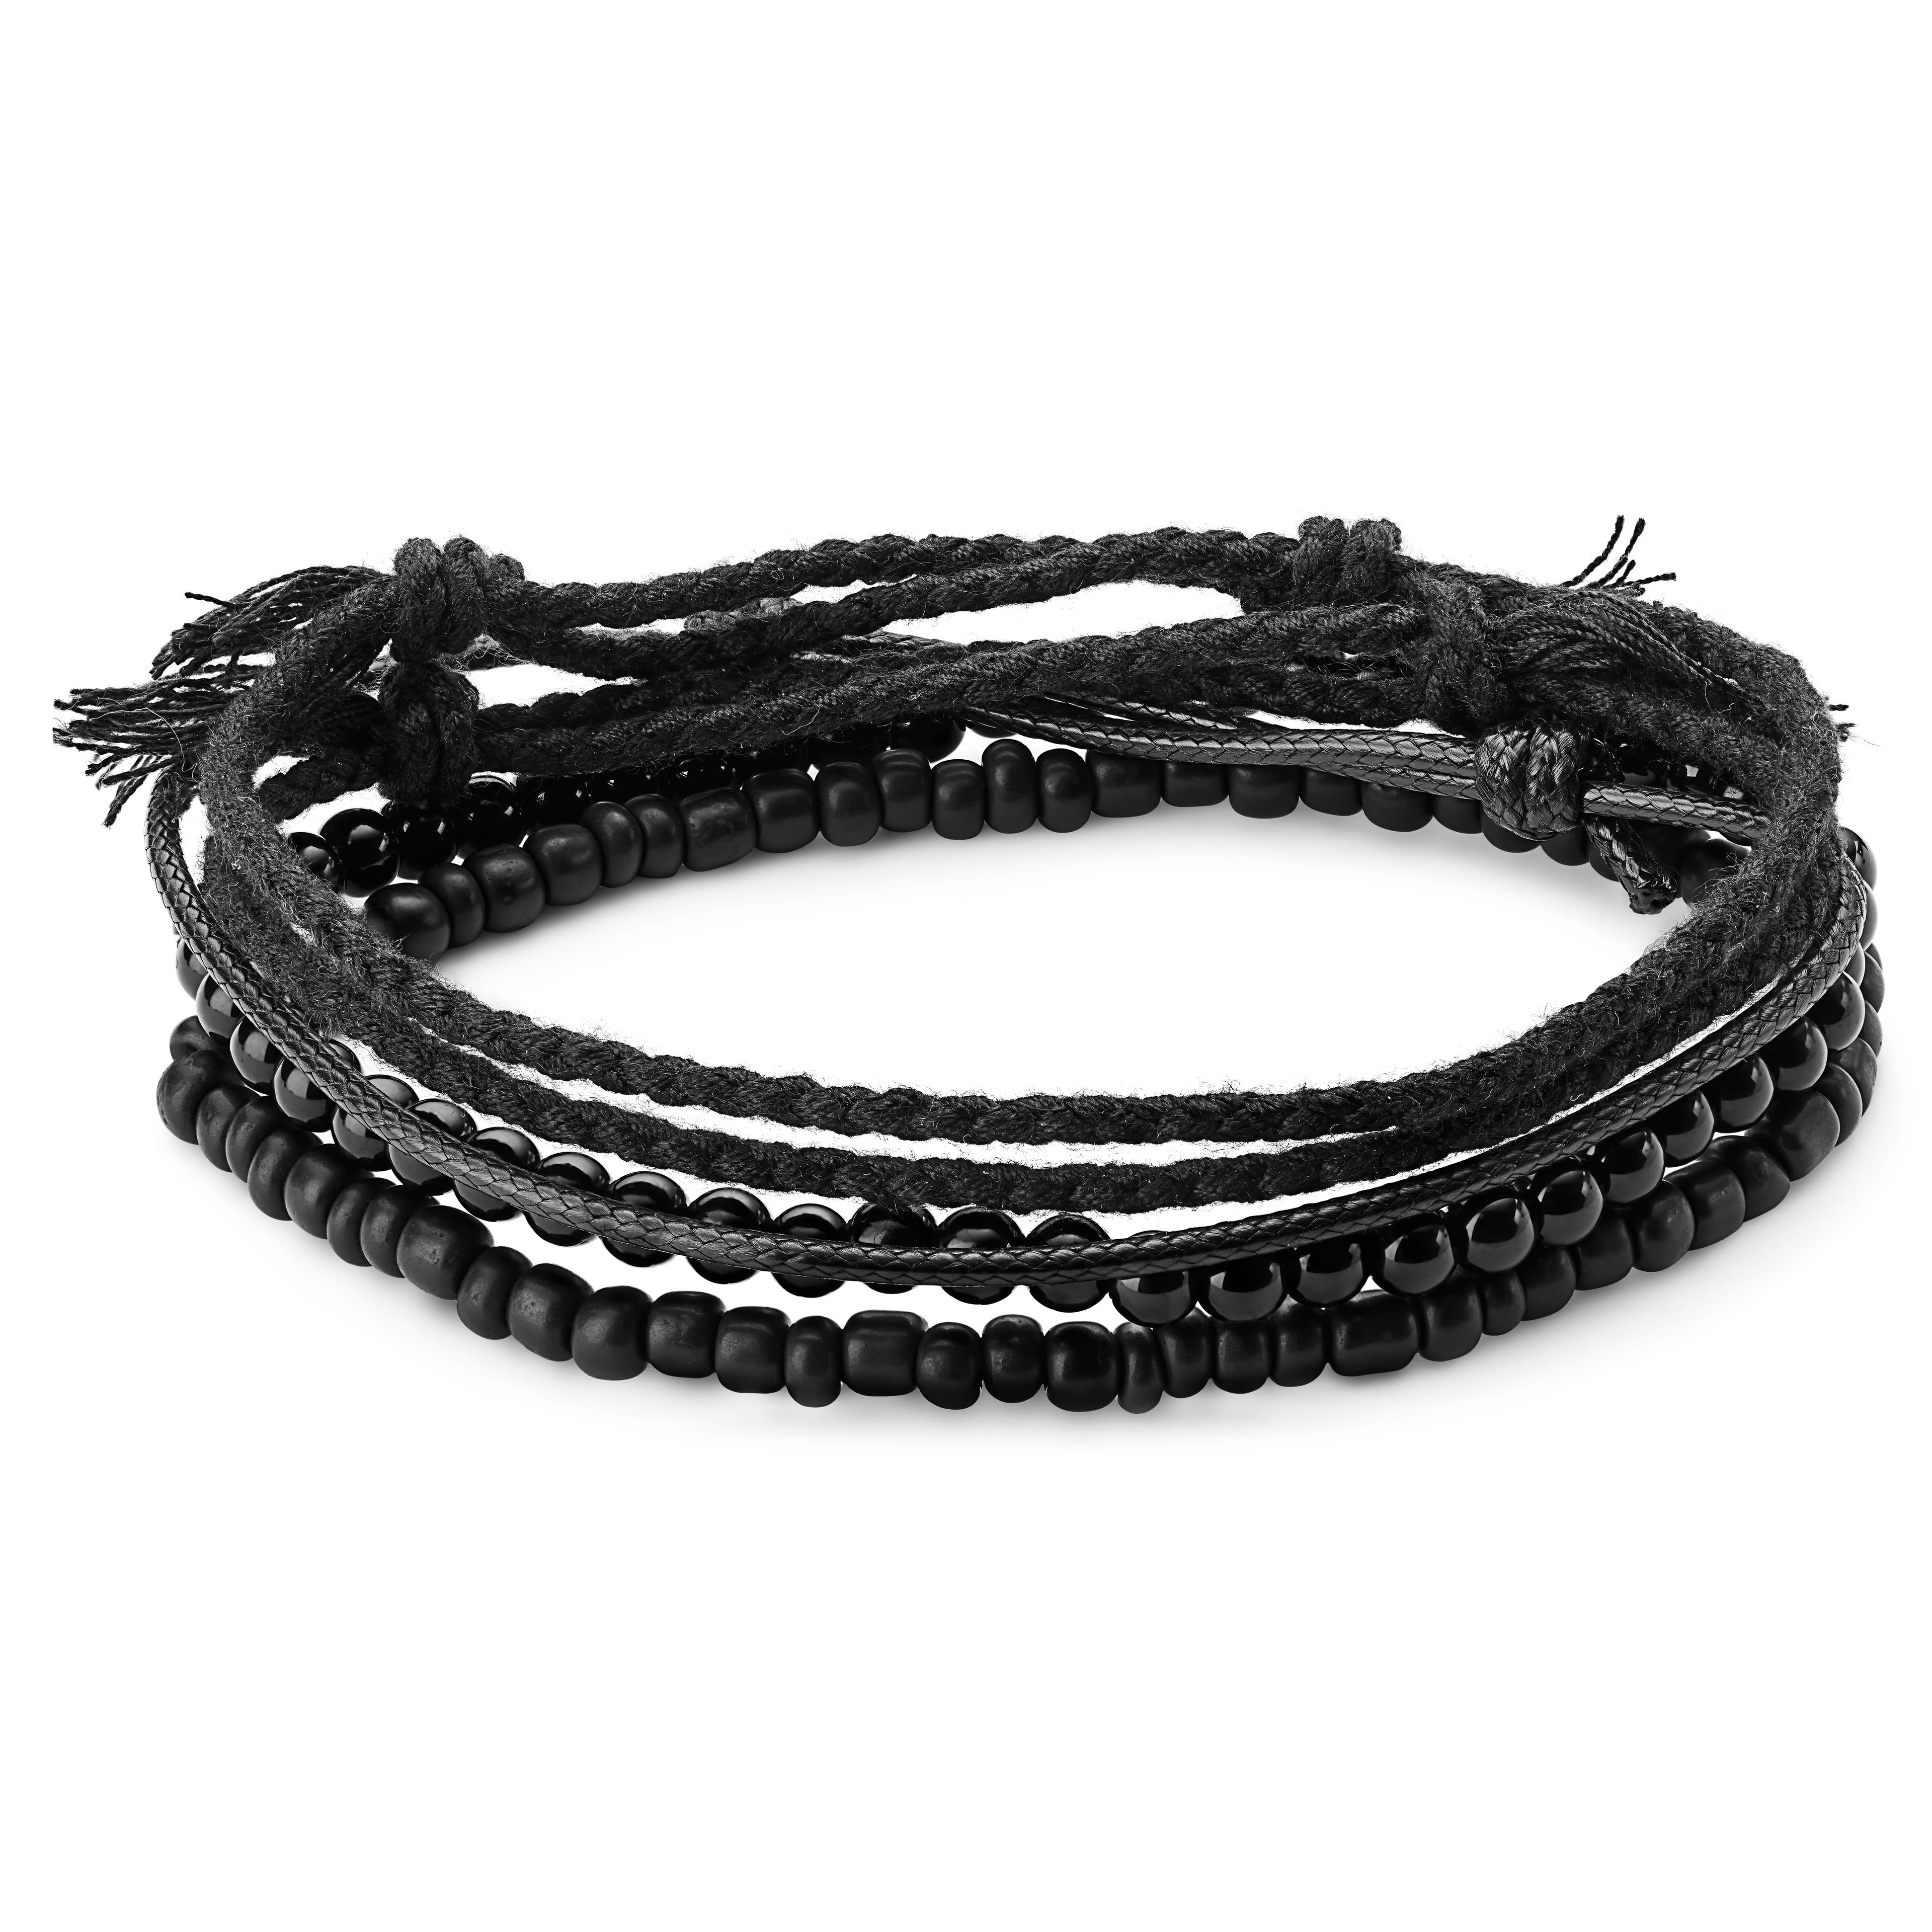 Armbandset aus schwarzem Onyx, Baumwolle und Leder